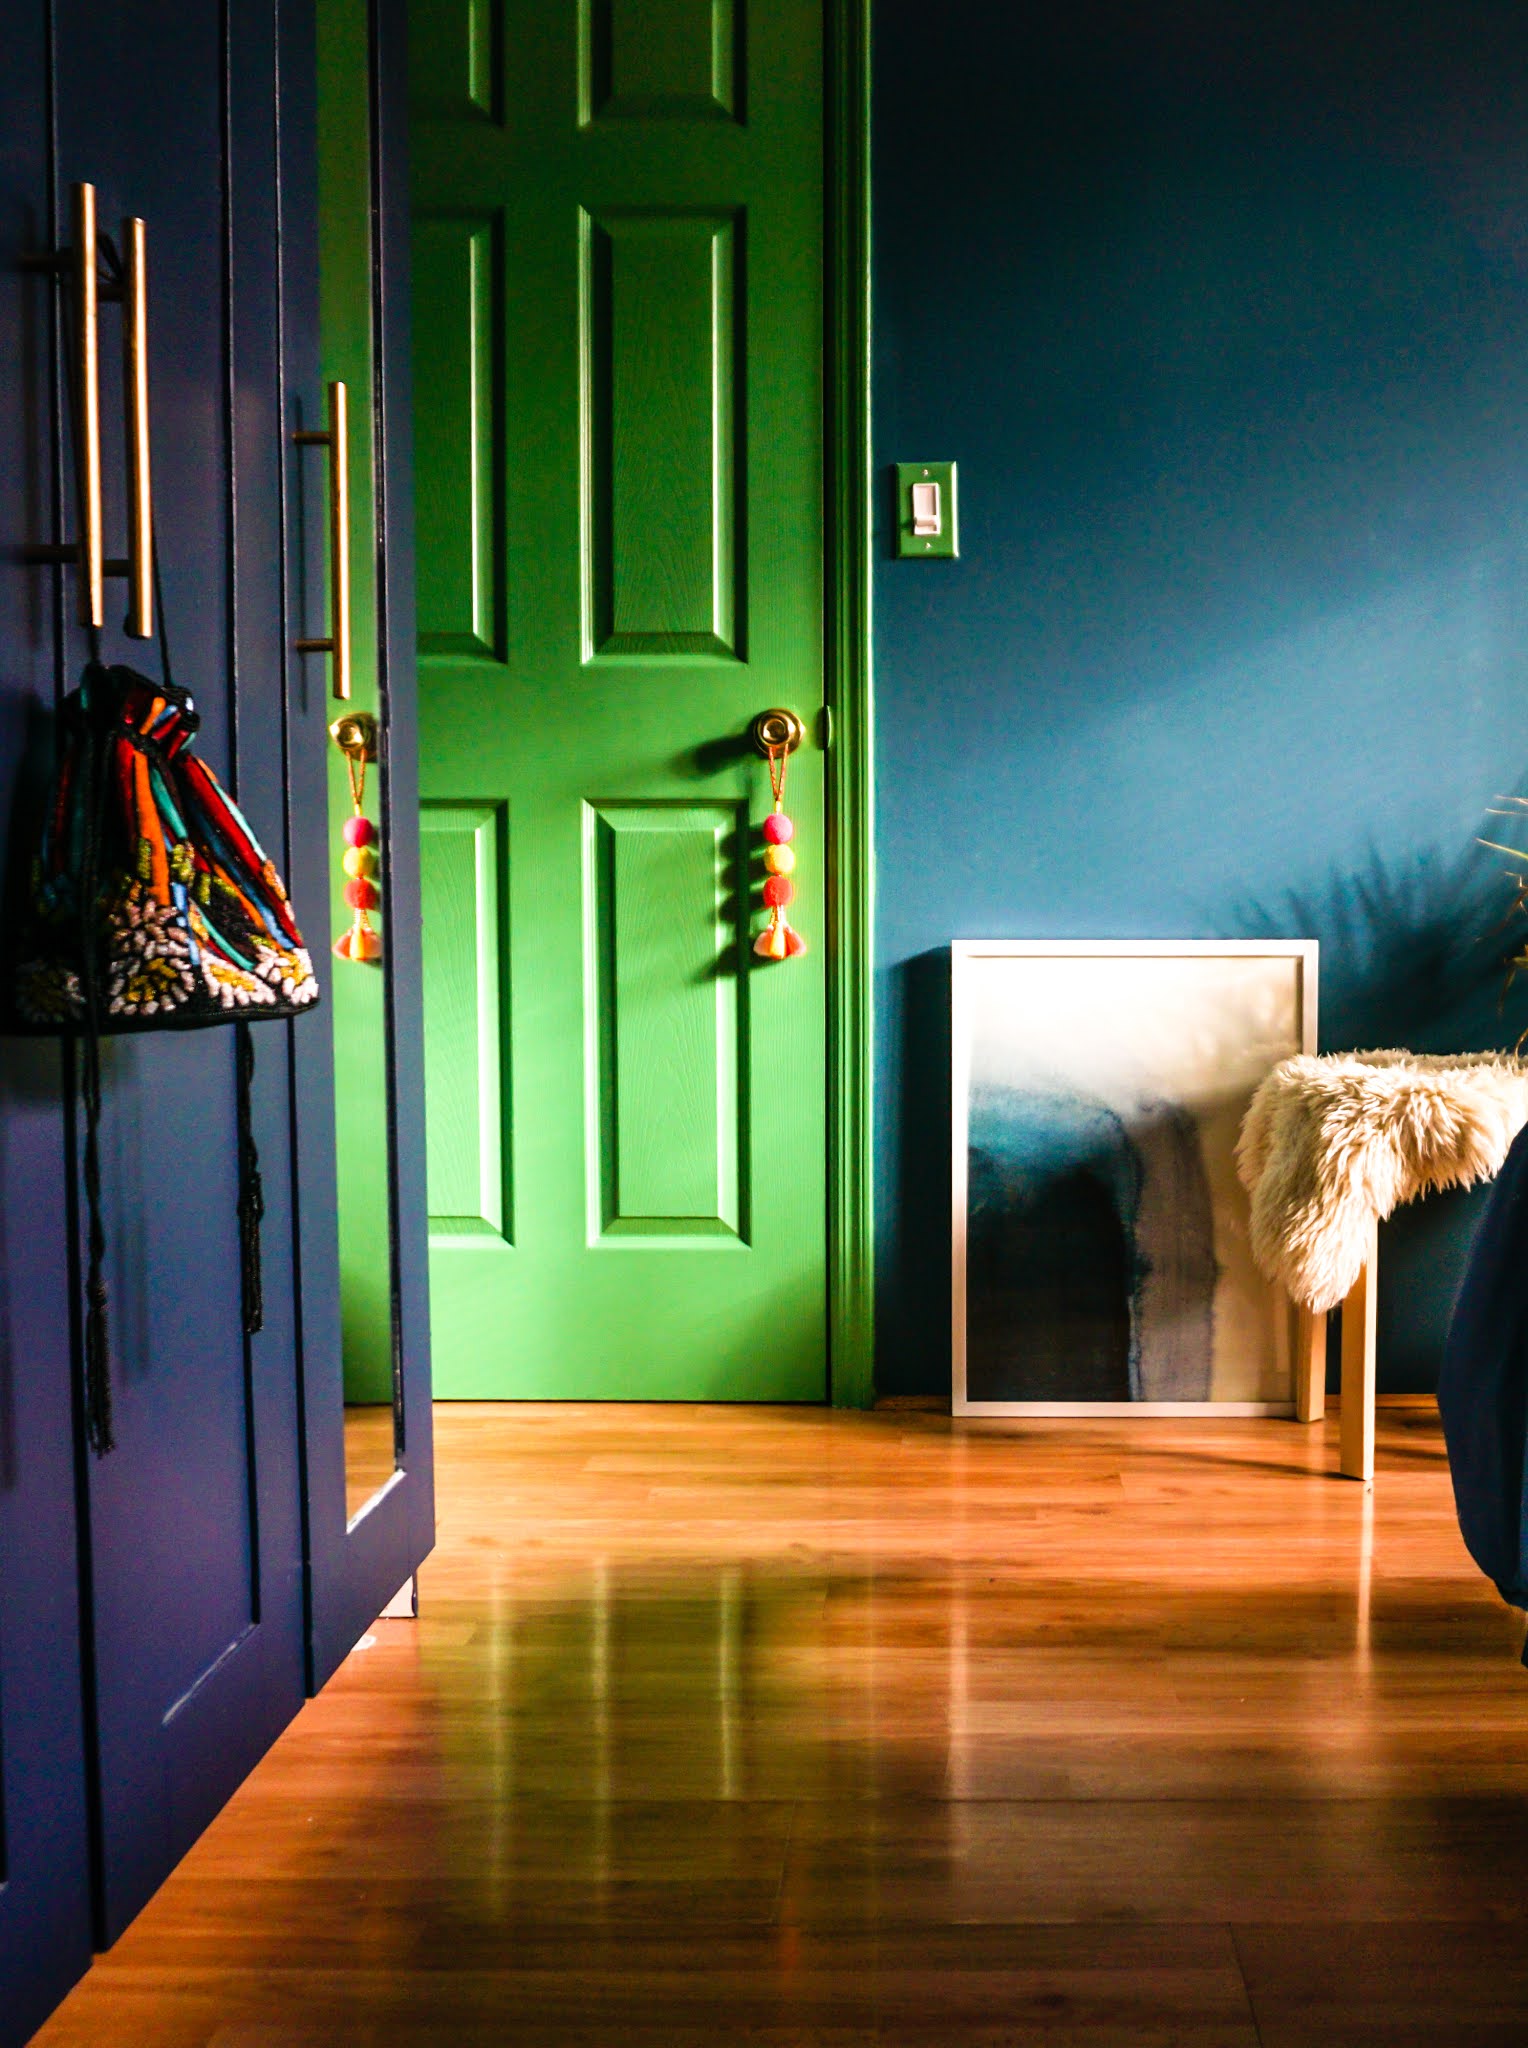 green bedroom door // green and blue bedroom // green and aqua bedroom // deep bedroom colors // soothing dark bedroom colors // bedroom color Inspo // color scheme blue and green // Kelly green door // Clare Paint matcha latte // Clare Paint deep dive // Clare Paint goodnight moon // blue bedroom // green bedroom // colorful doors // colorful interiors // colorful interior door // colorful homes // Megan Zietz home // tfdiaries home // green bedroom door // deep blue walls // dark and moody bedrooms // small colorful homes // small space paint colors // colorful home inspiration // contrasting door colors // door color ideas // door color inspo // boho bedrooms // moody bedrooms // jewel tone bedrooms // brimnes Ikea hack // brimnes wardrobe hack // ikea brimnes wardrobe hack